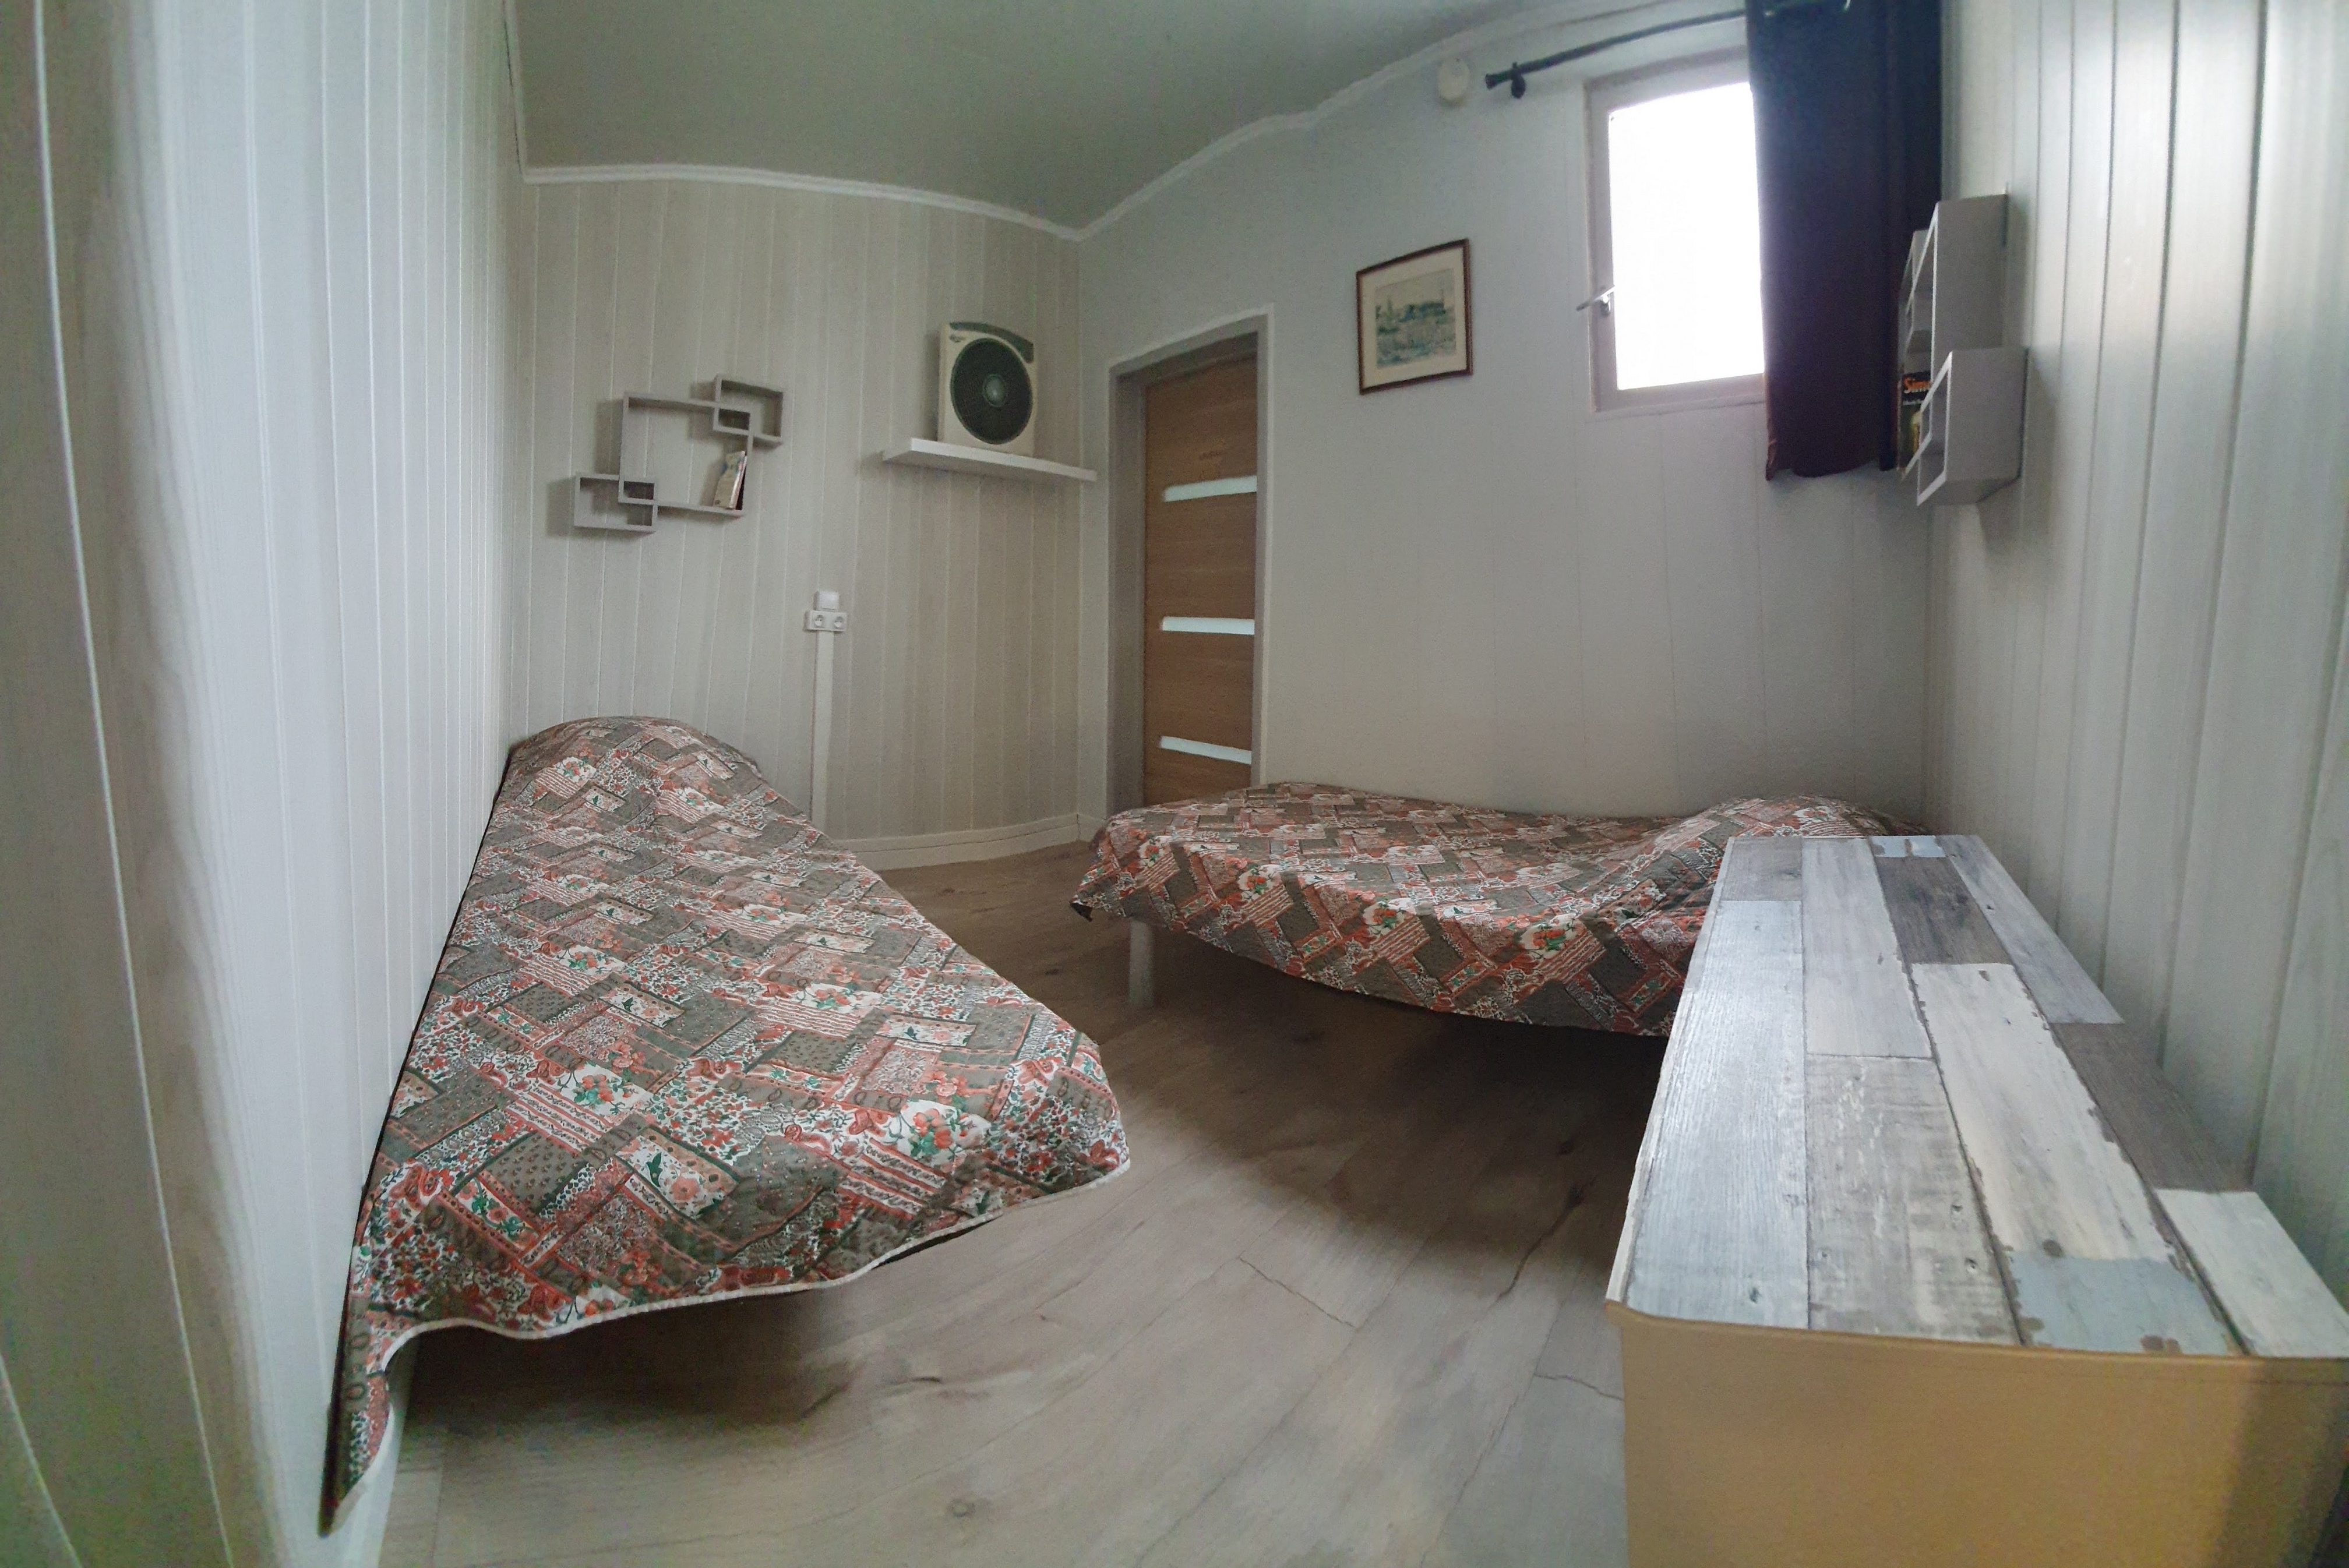 Chambre 2 lits simples casa emma 1